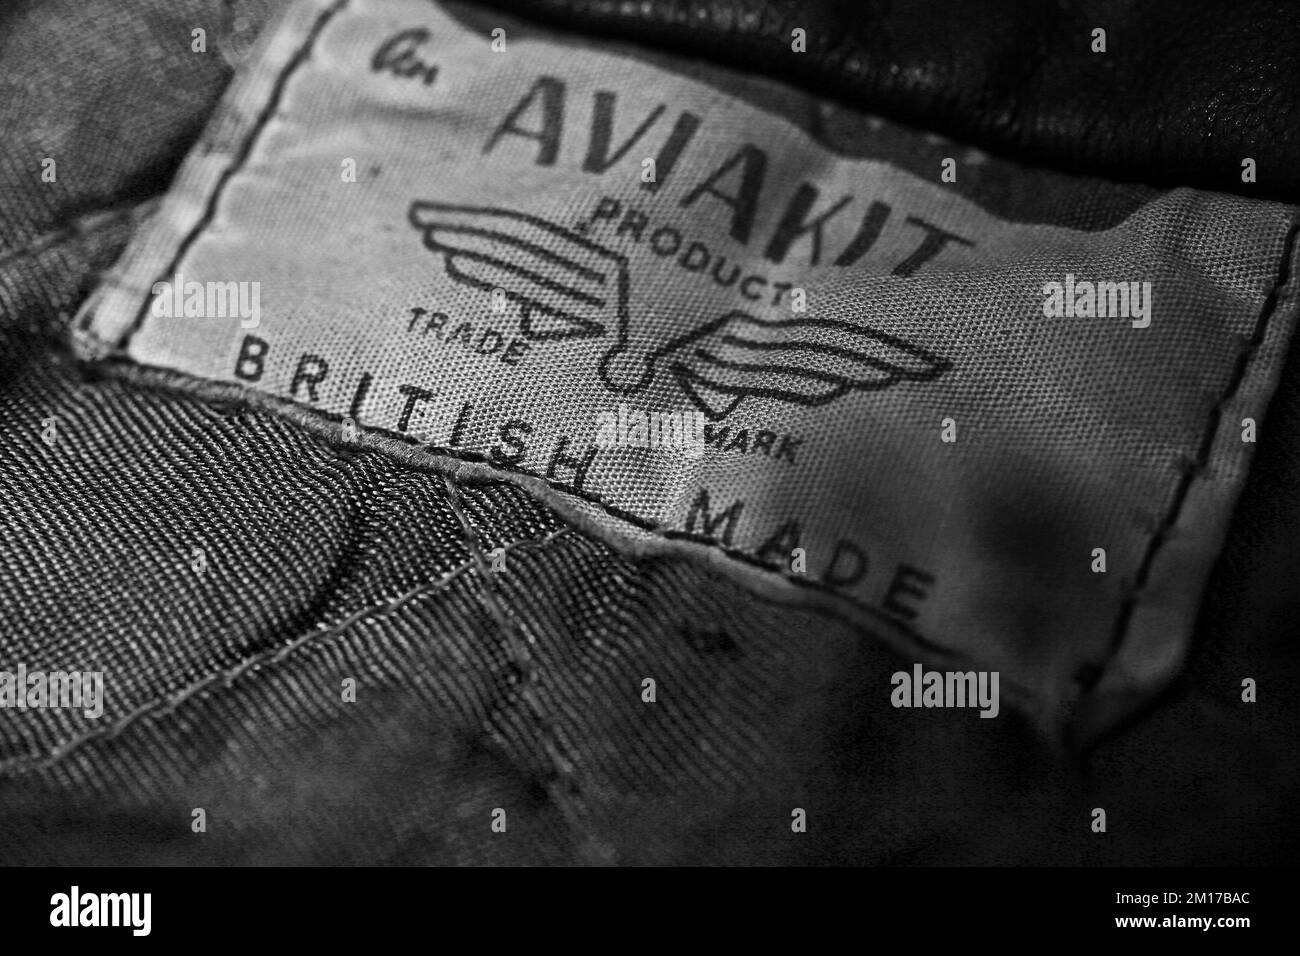 Étiquette Aviakit vintage dans une veste Lewis Leathers. Banque D'Images